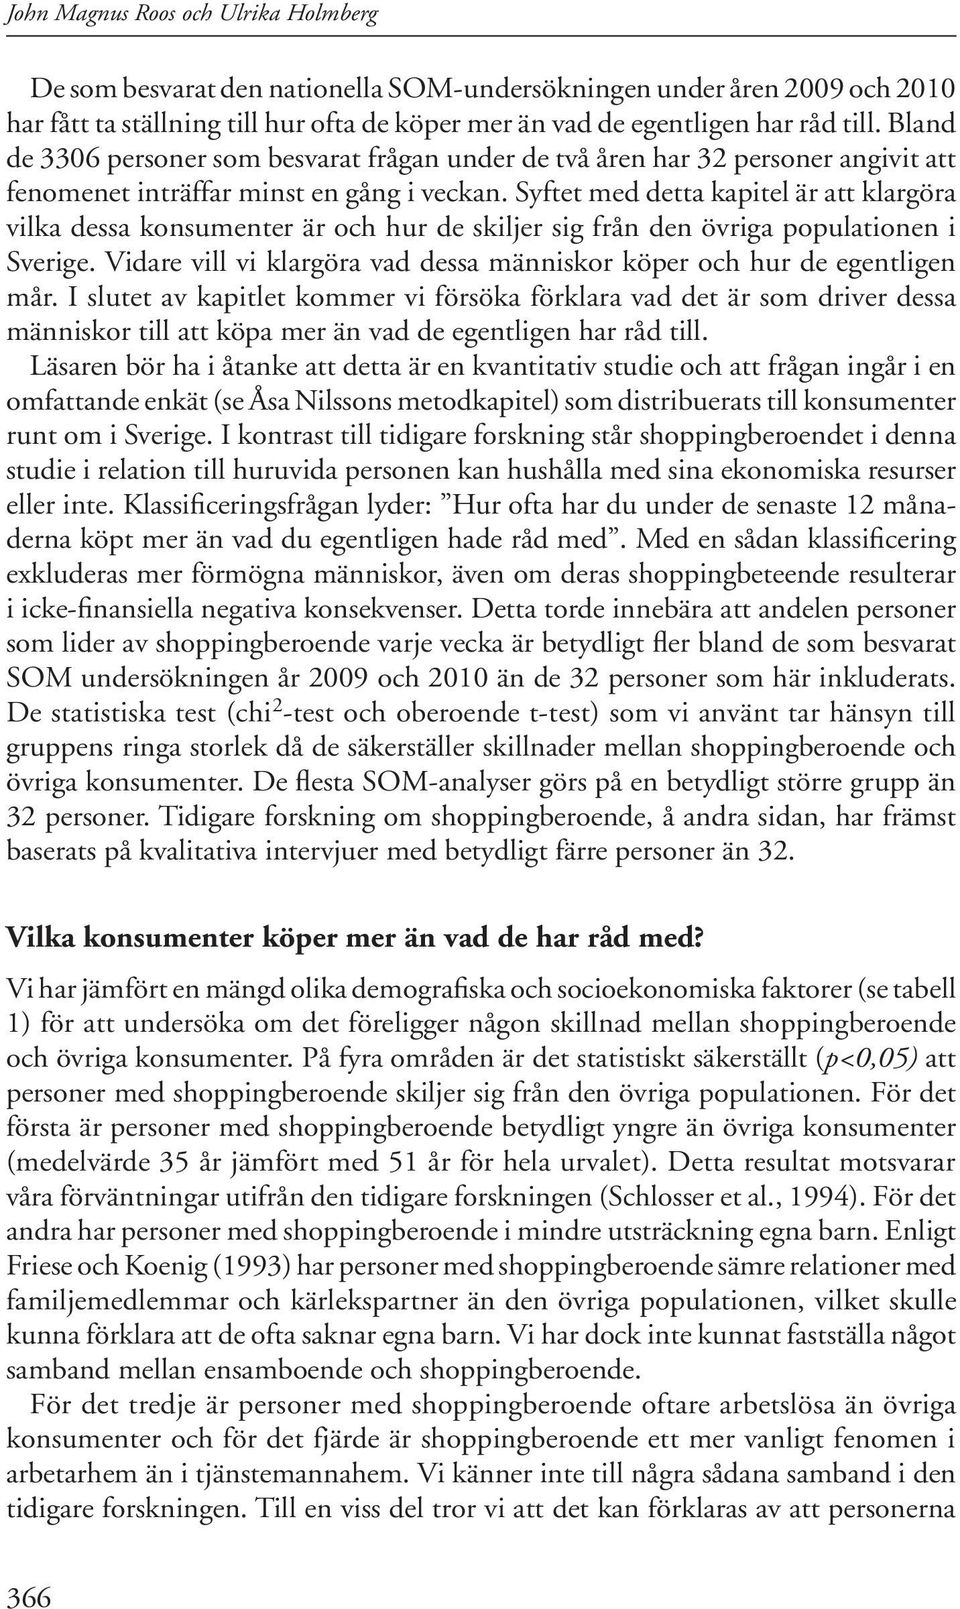 Syftet med detta kapitel är att klargöra vilka dessa konsumenter är och hur de skiljer sig från den övriga populationen i Sverige.